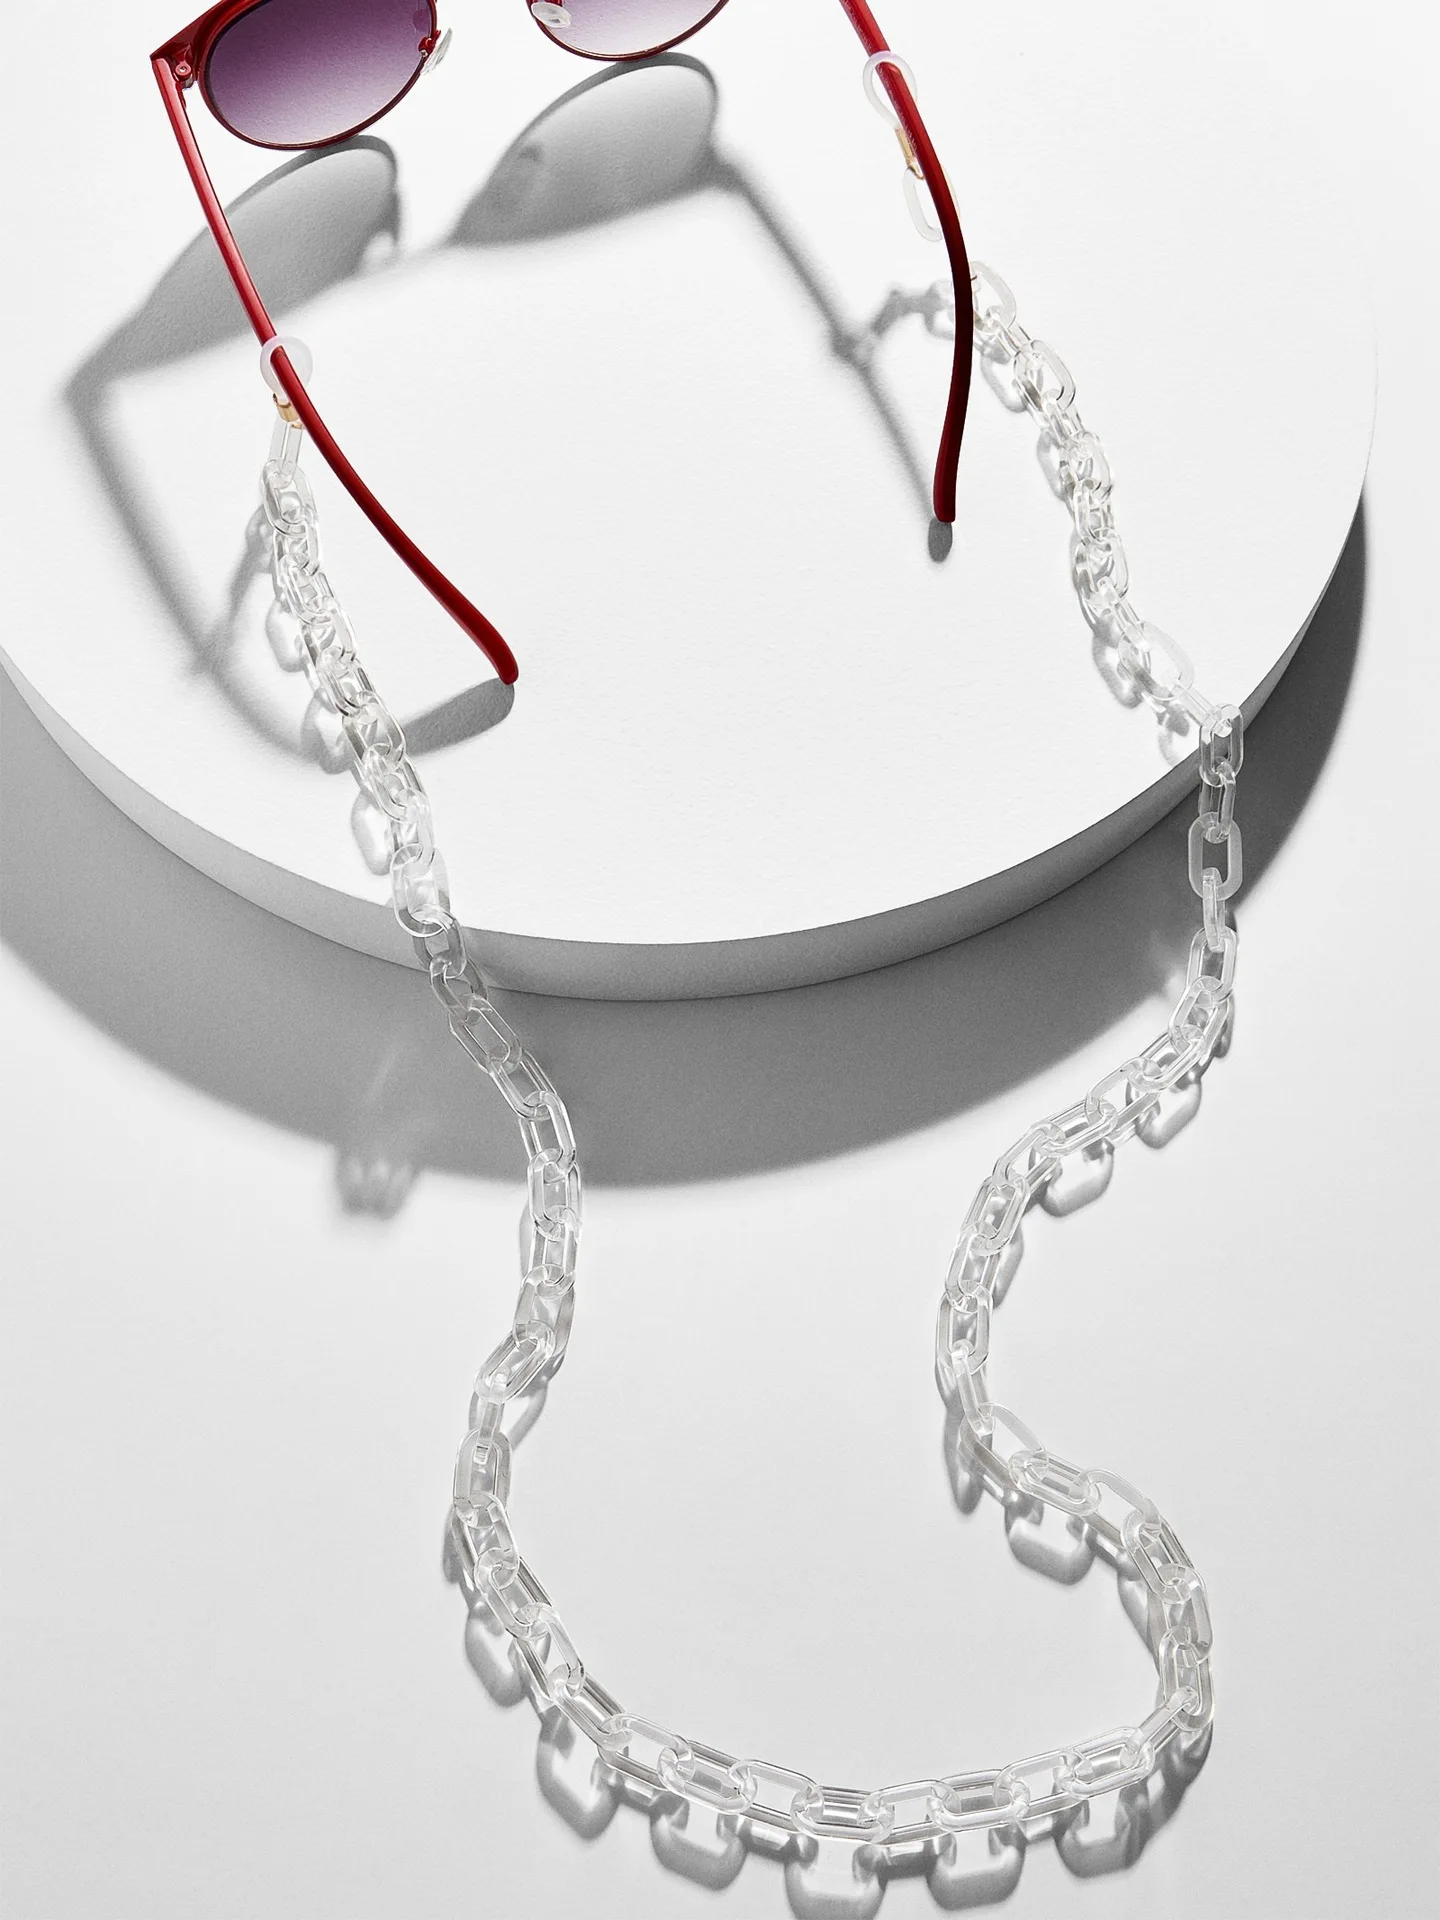 Онлайн знаменитости INS стиль знаменитостей очки цепь Лолита Холтер цепочка для солнцезащитных очков Южная Корея ретро модная цепочка для солнцезащитных очков